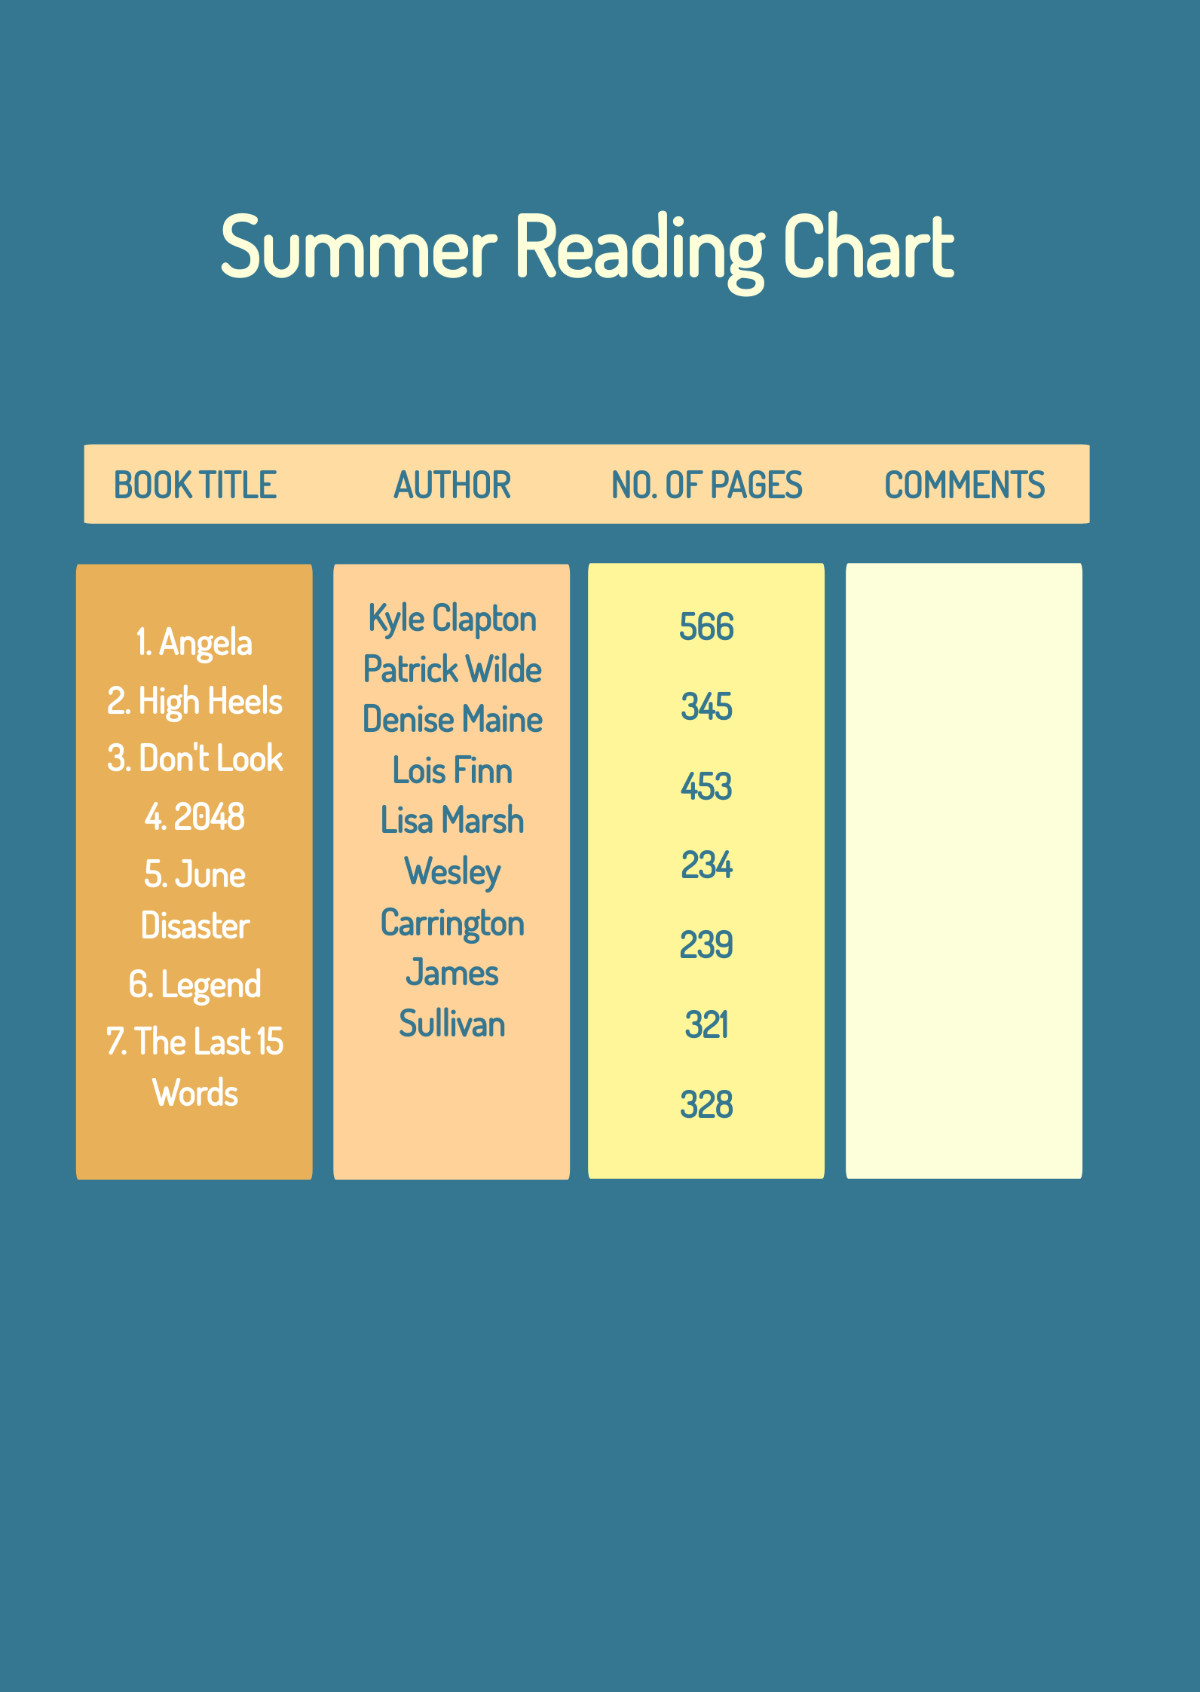 Summer Reading Chart Template